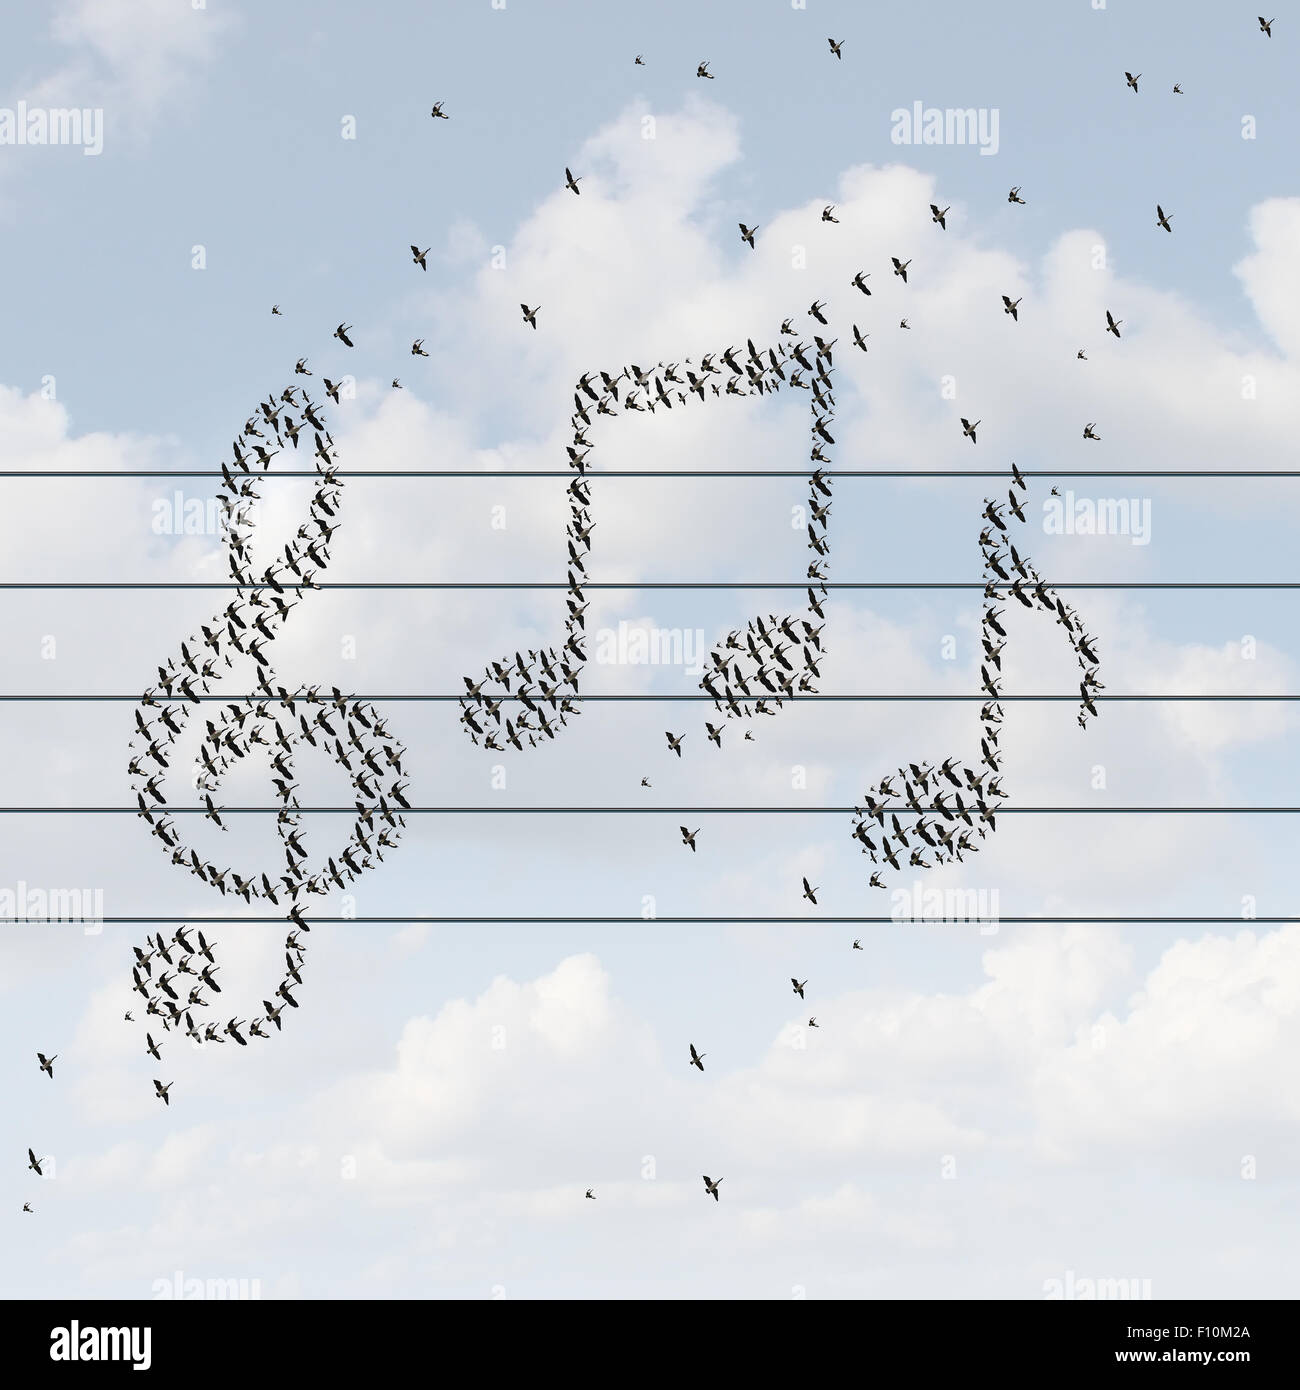 Il concetto di musica e supporti registrati simbolo di distribuzione come uccelli volare insieme a forma di note musicali come una metafora per godersi una melodia o distribuzione di brani musicali su internet o la radio online con un servizio wireless. Foto Stock